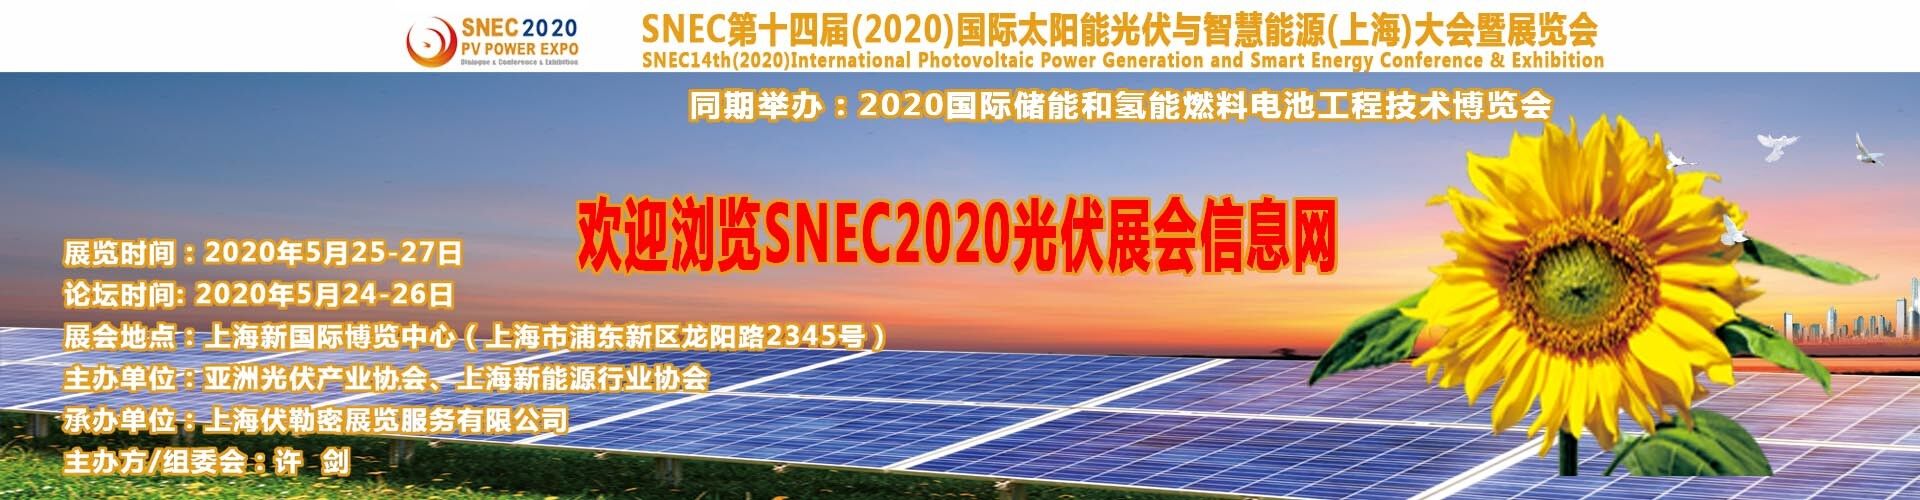 上海上半年較大光伏展覽會/中國上海上半年太陽能展/上半年SNEC光伏展會/